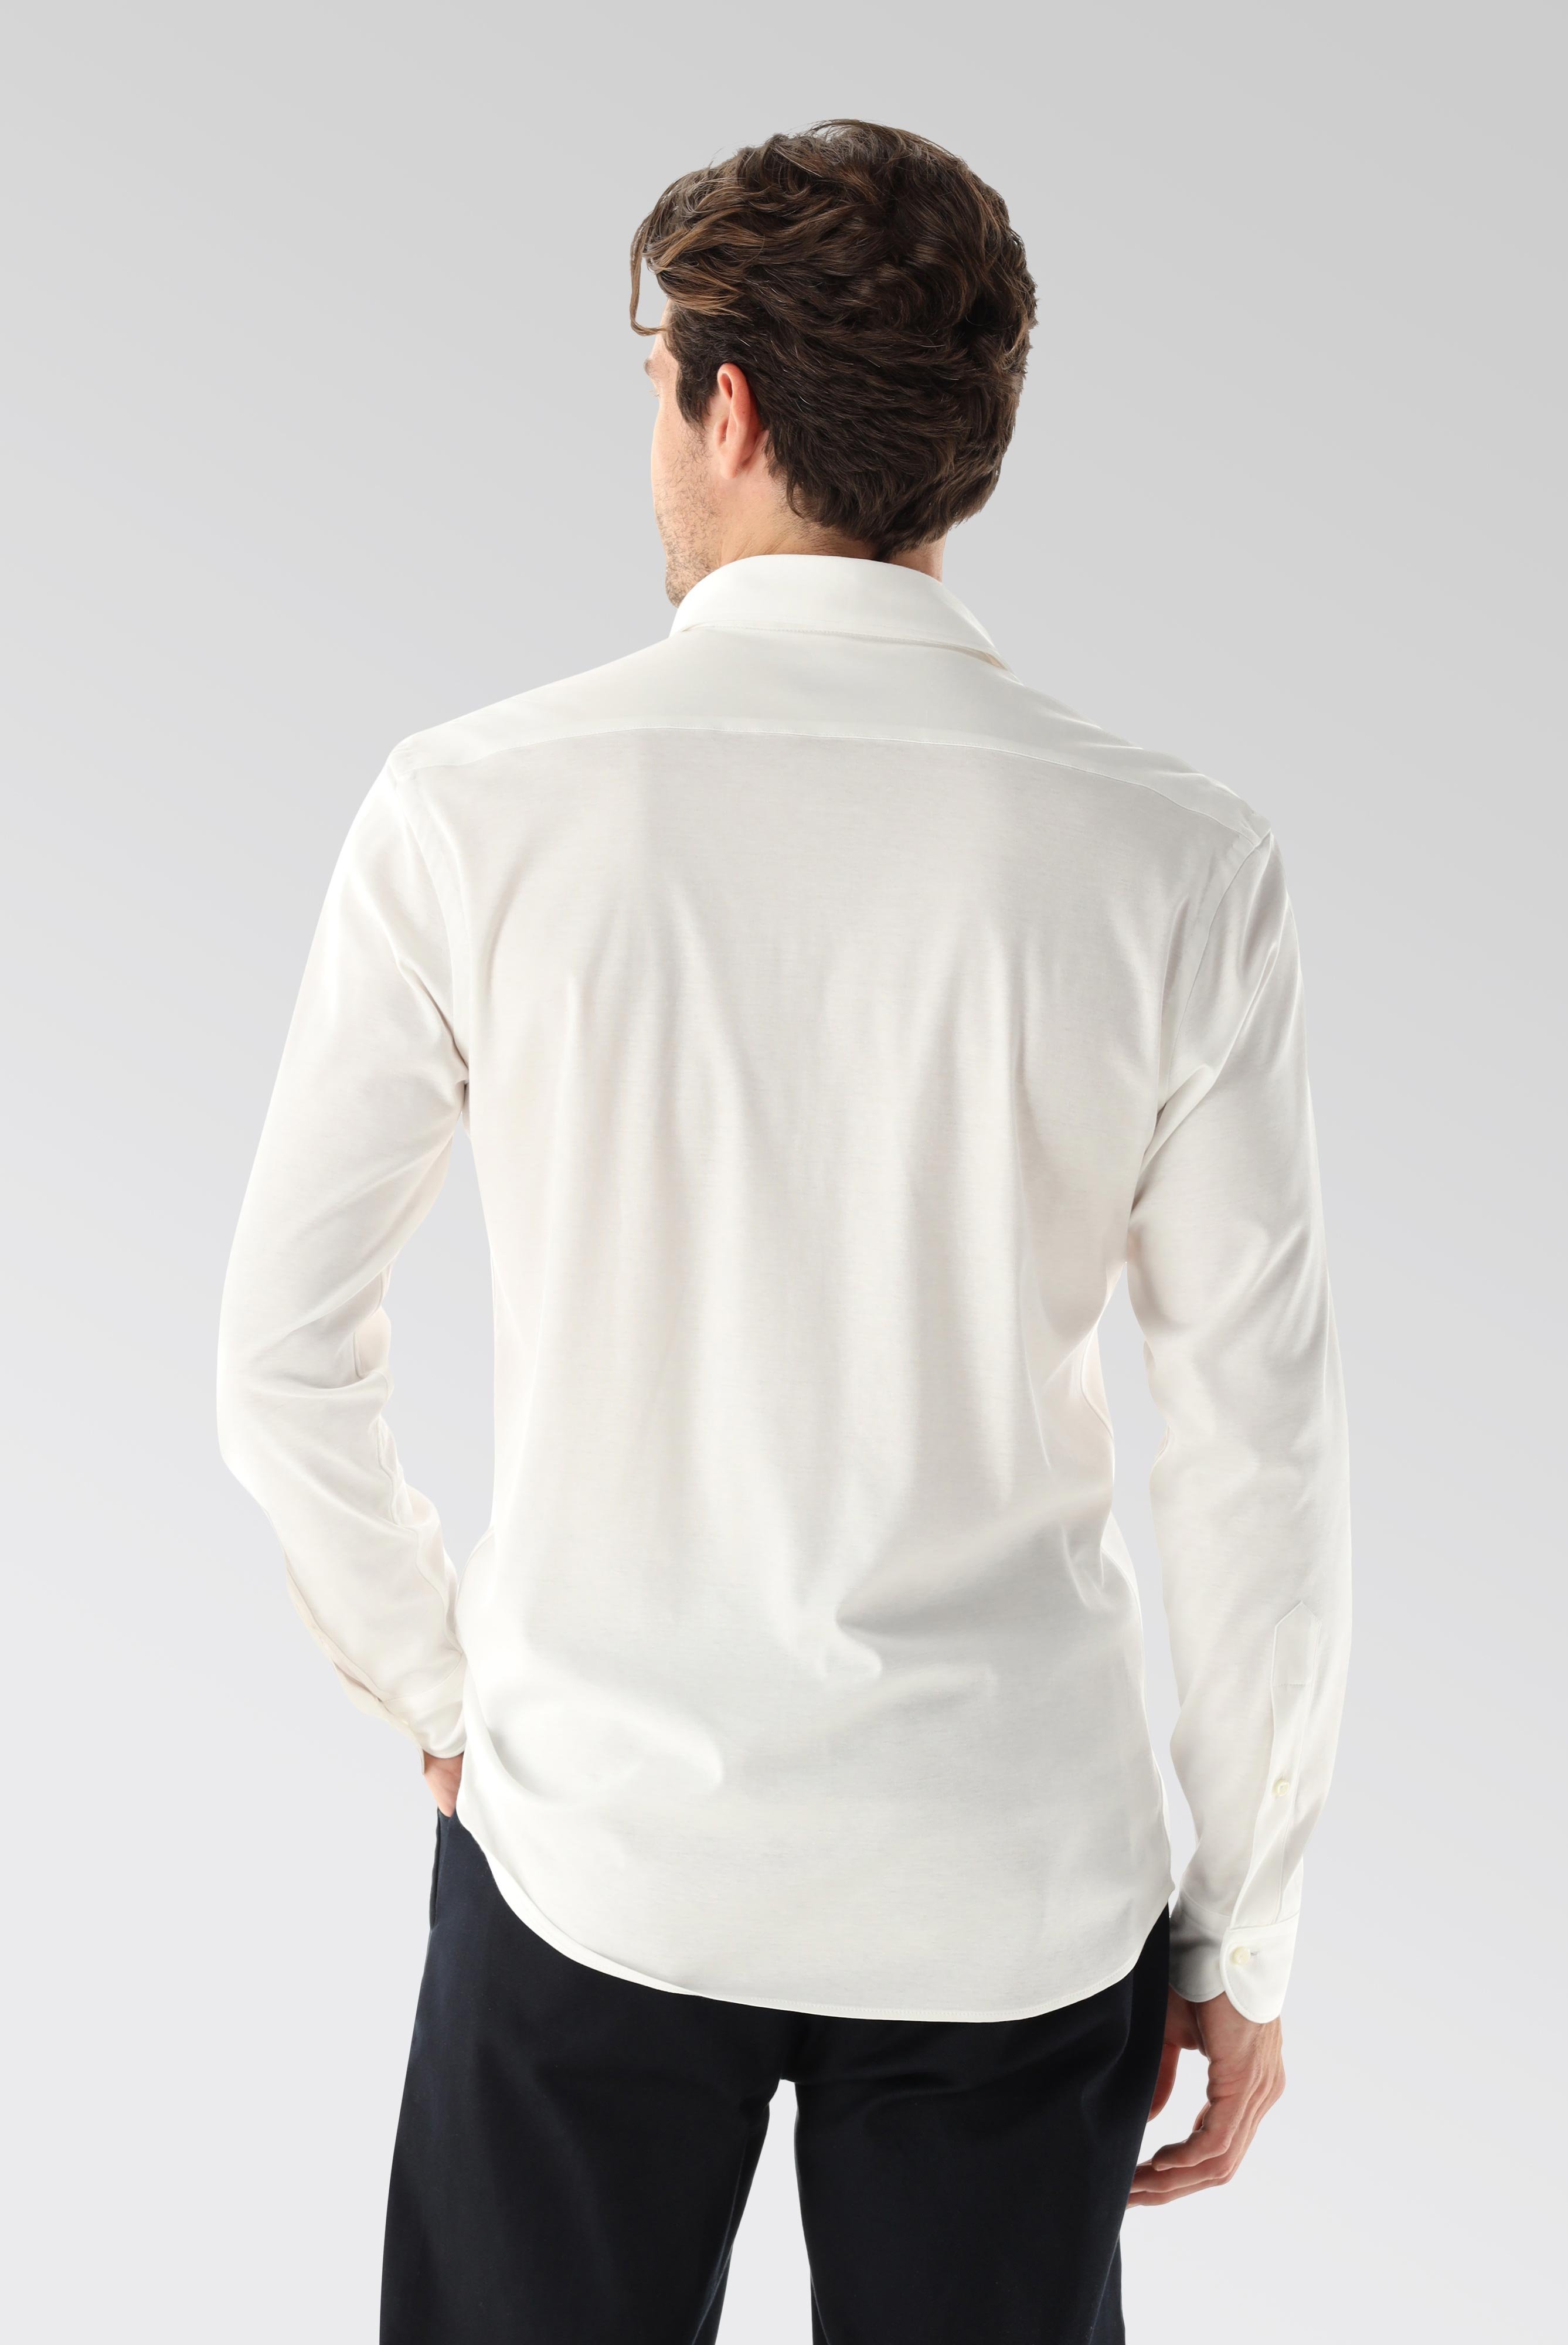 Bügelleichte Hemden+Jersey Hemd mit glänzender Optik Tailor Fit+20.1683.UC.180031.000.X3L